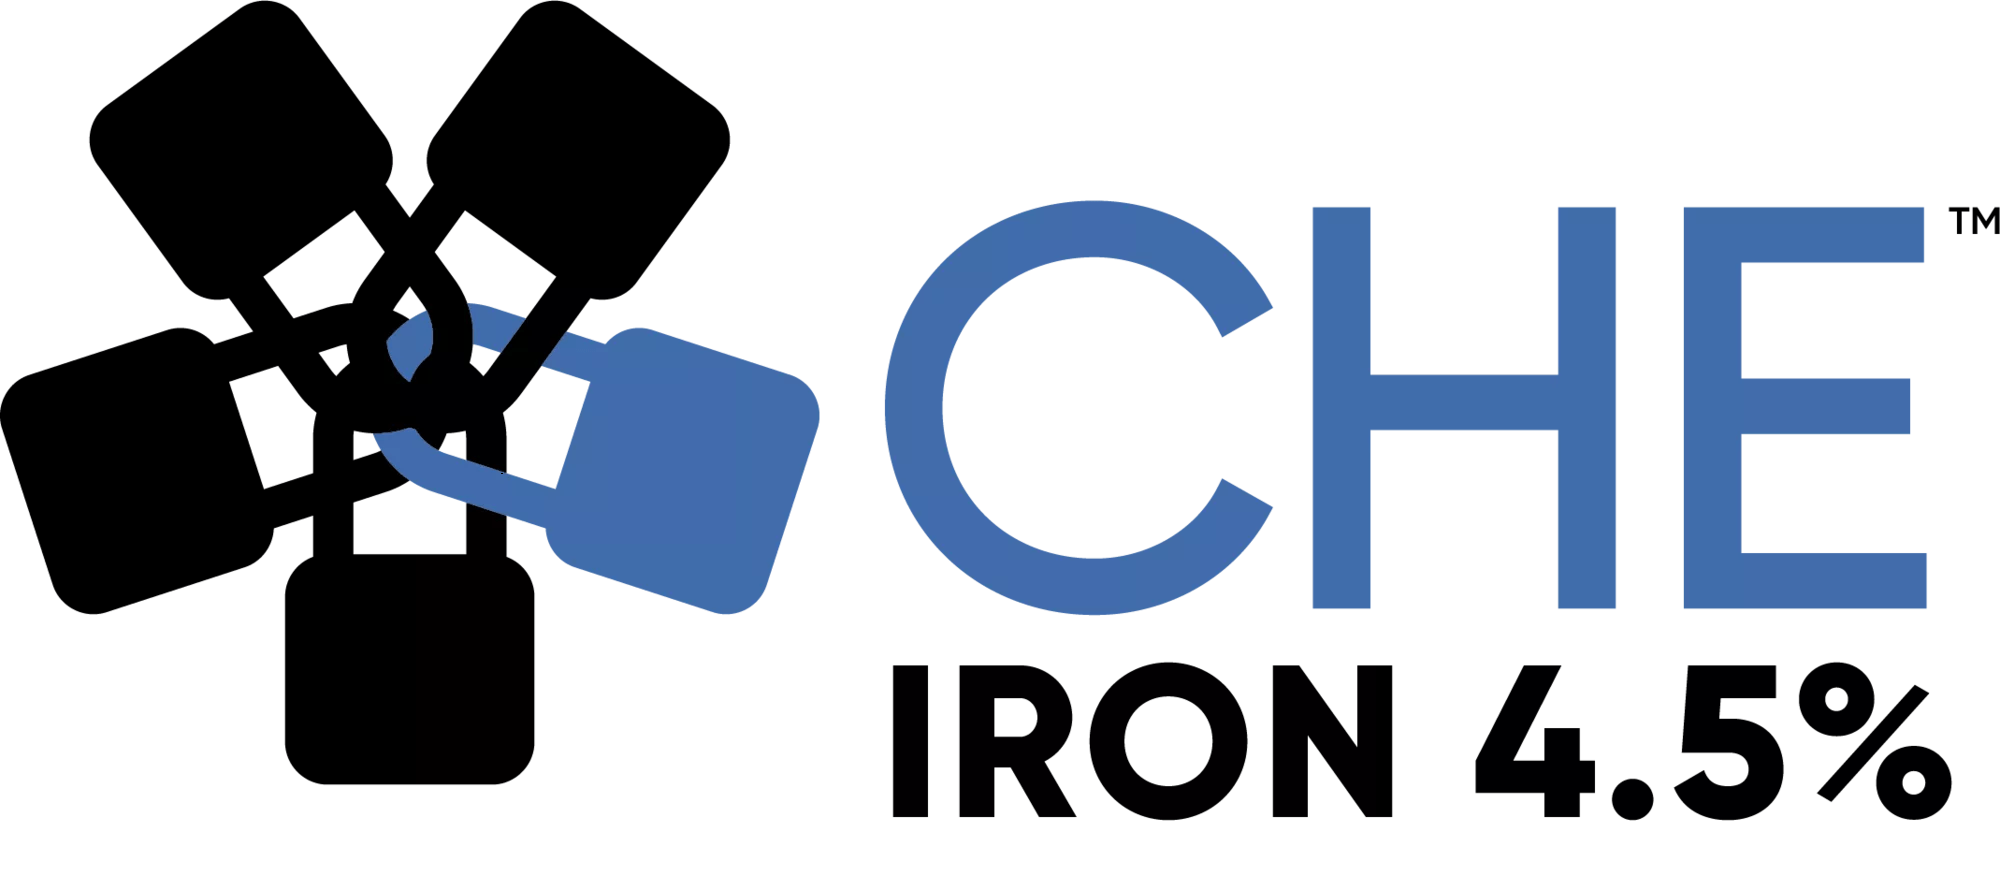 Che - Iron 4.5%